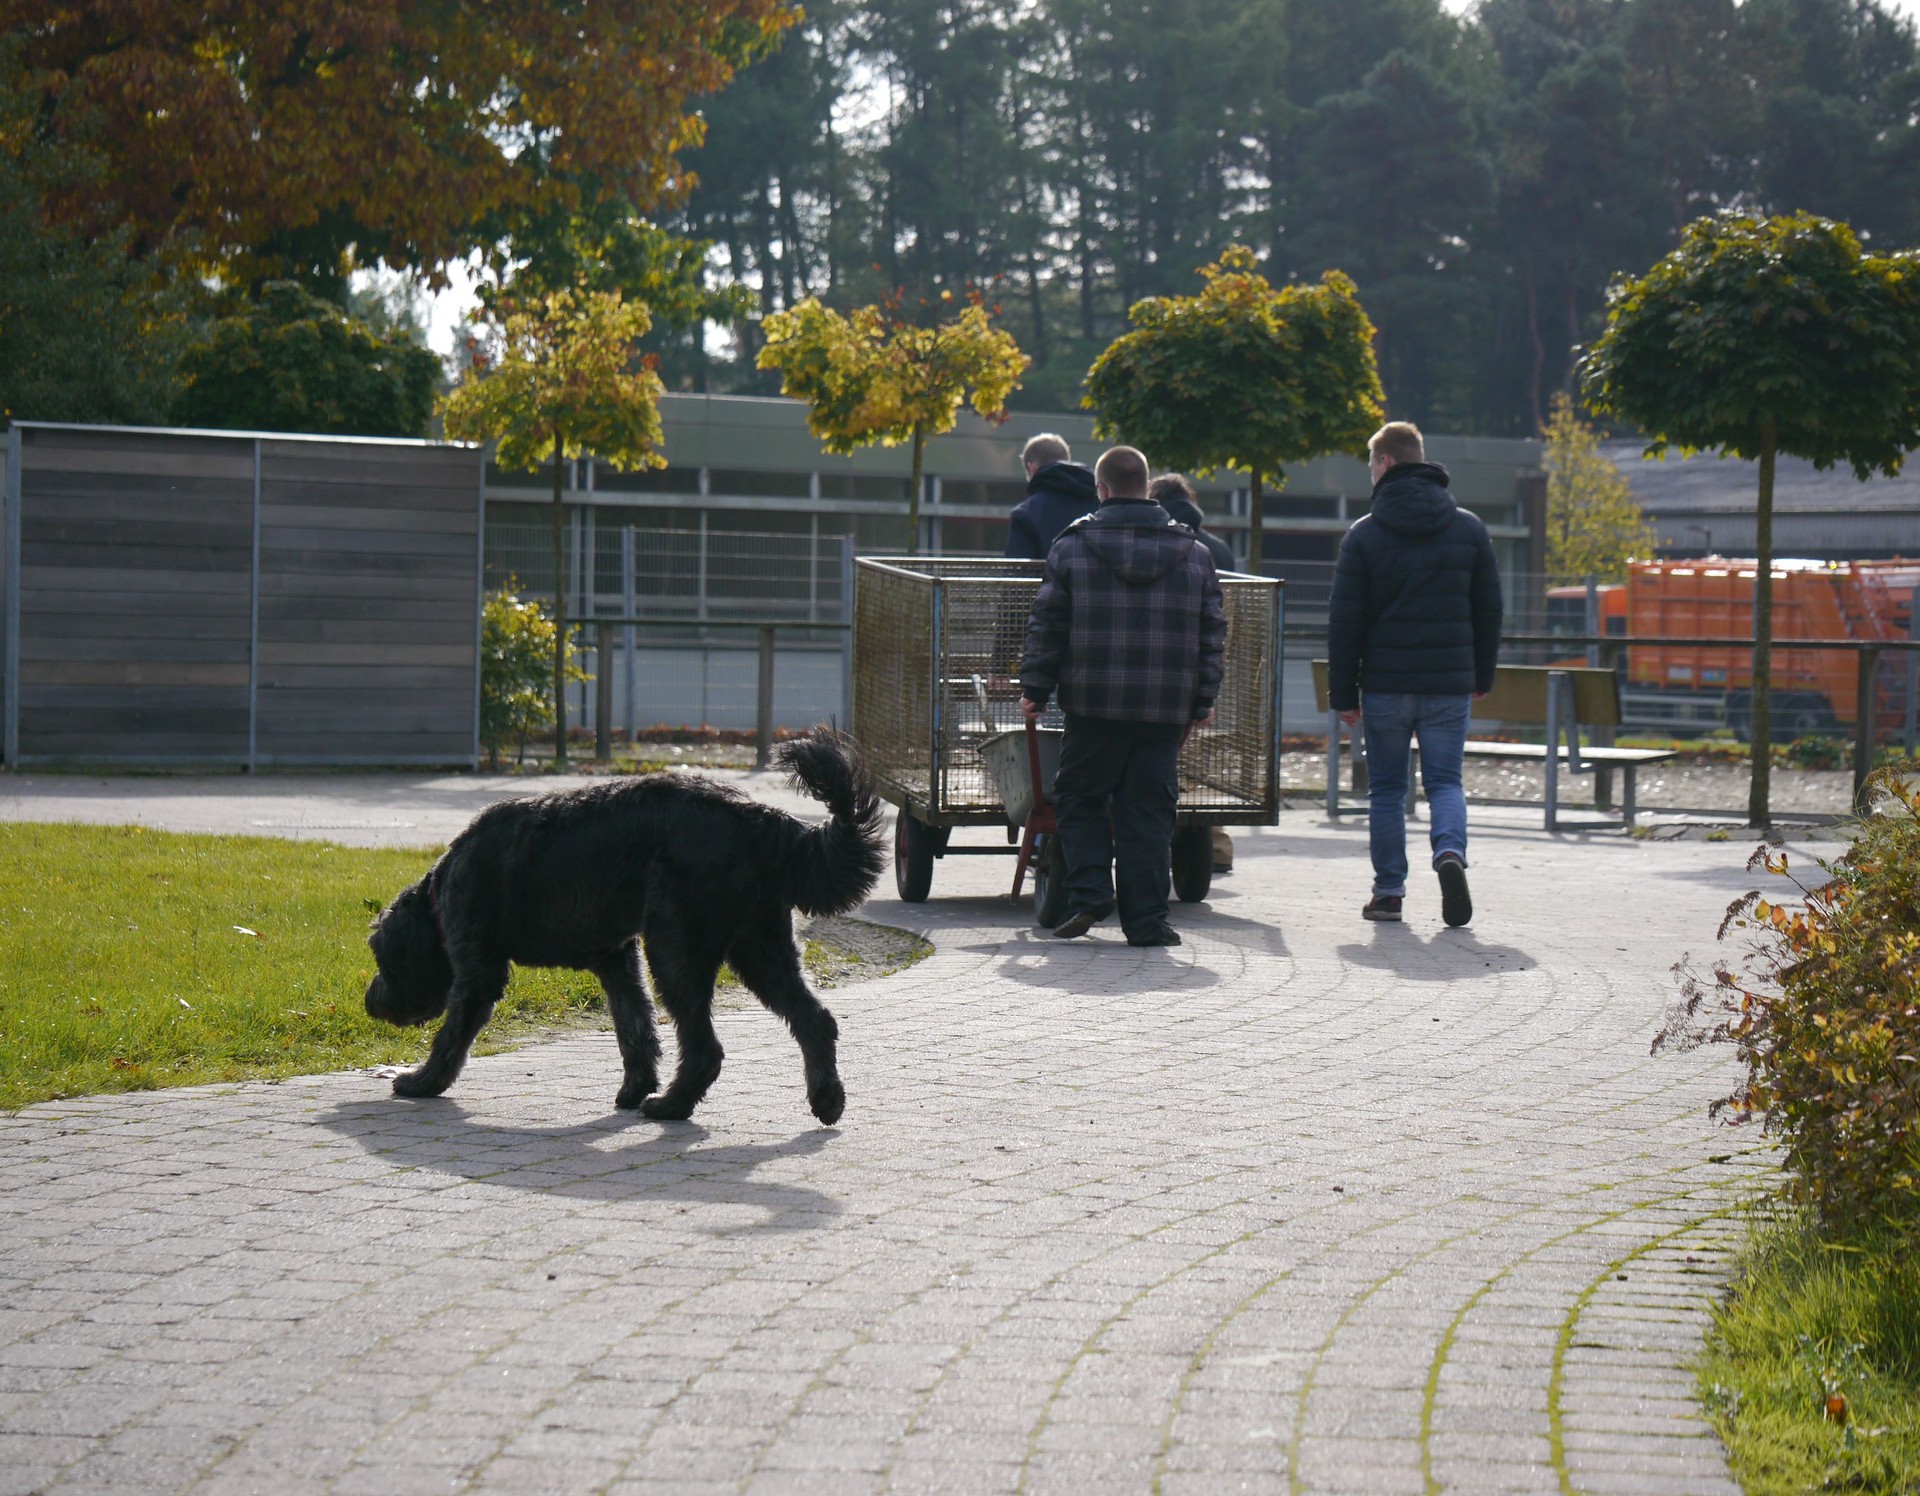 3 Personen und ein schwarzer Hund sind bei Arbeiten im Tiergehege zu sehen